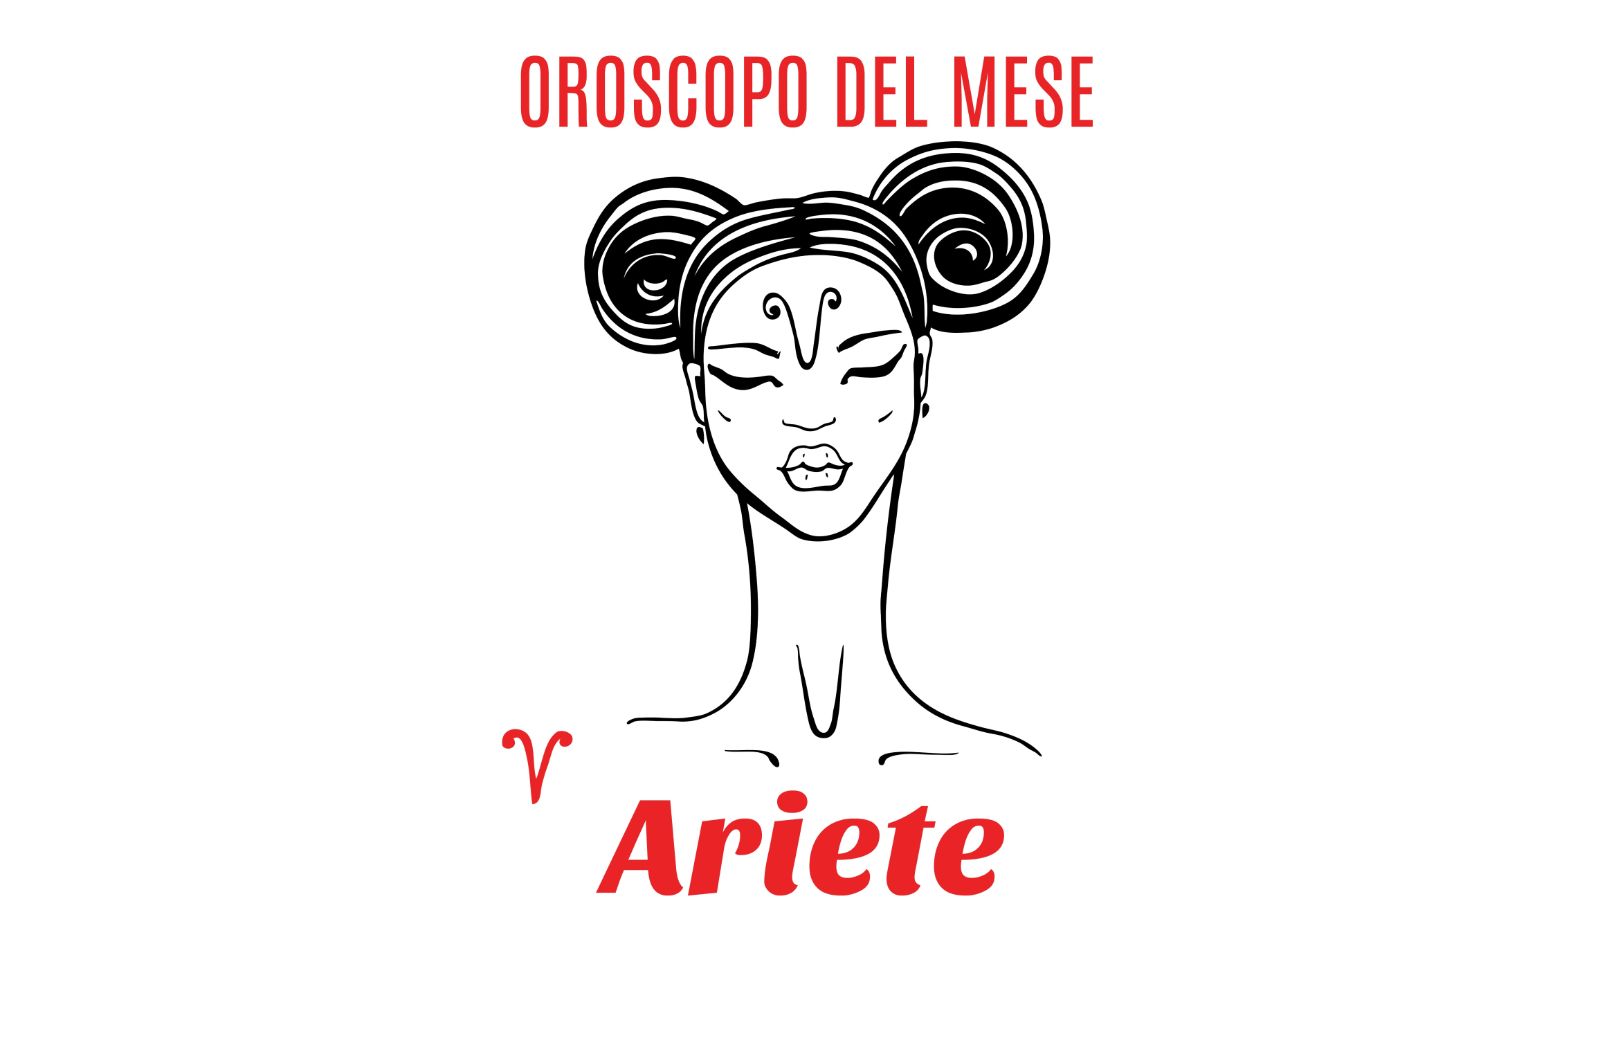 Oroscopo del mese: Ariete - settembre 2020